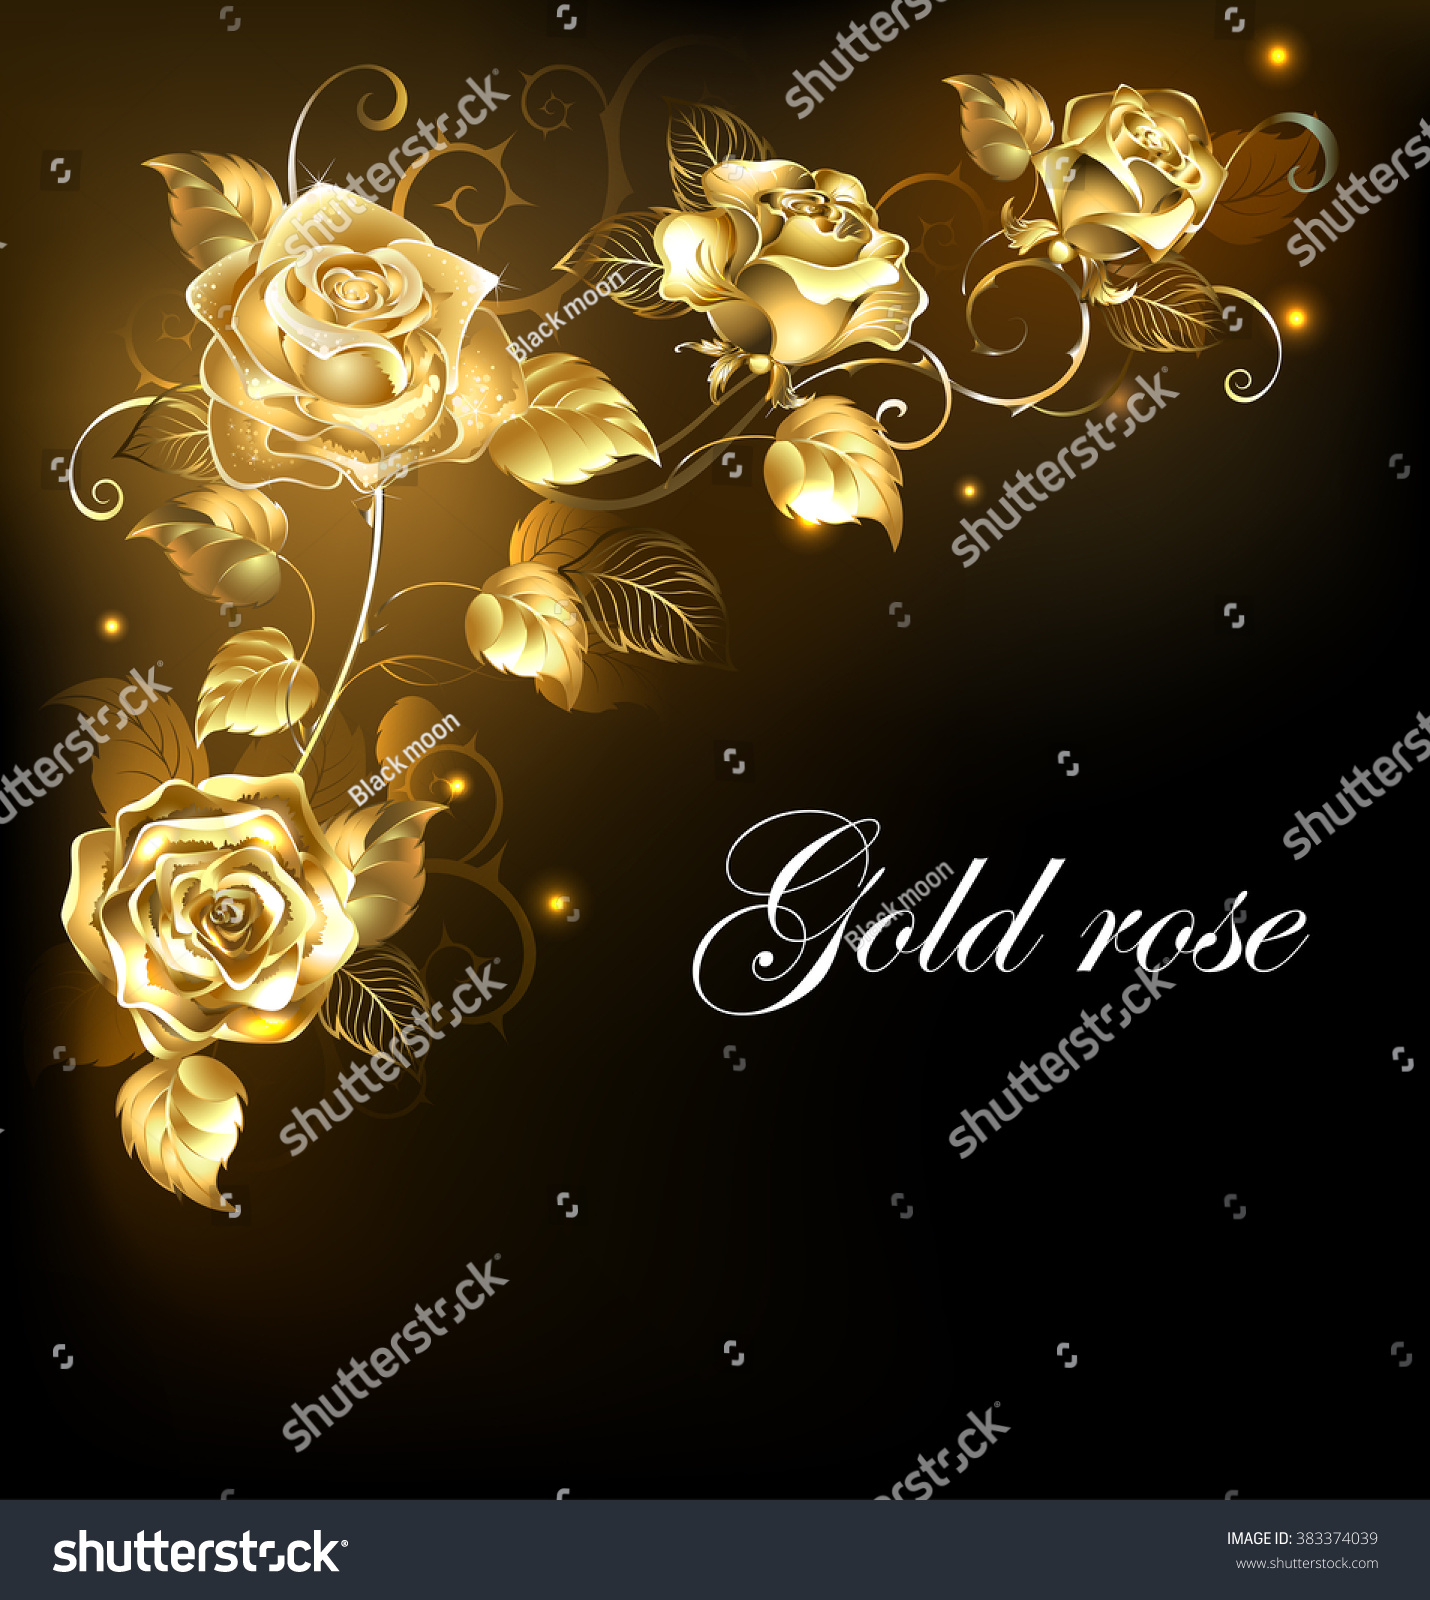 SVG of Twisted gold roses on black background. svg